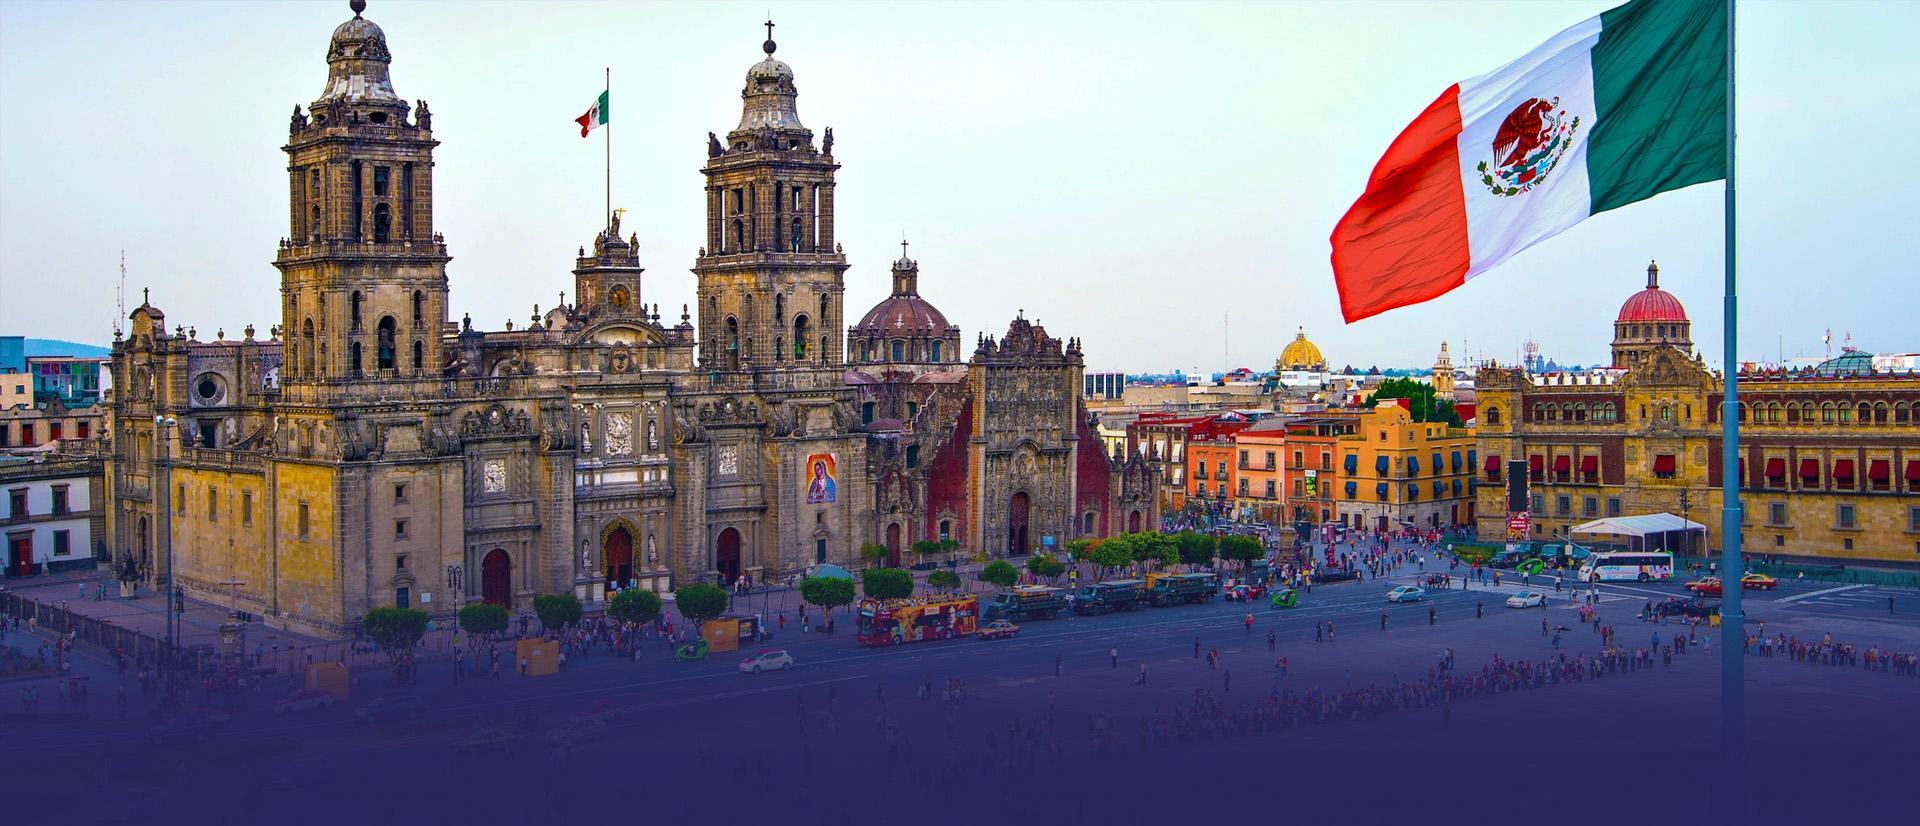 PIELGRZYMKA  do  MEKSYKU  na  święto  Matki  Bożej  z  Guadalupe! - background banner